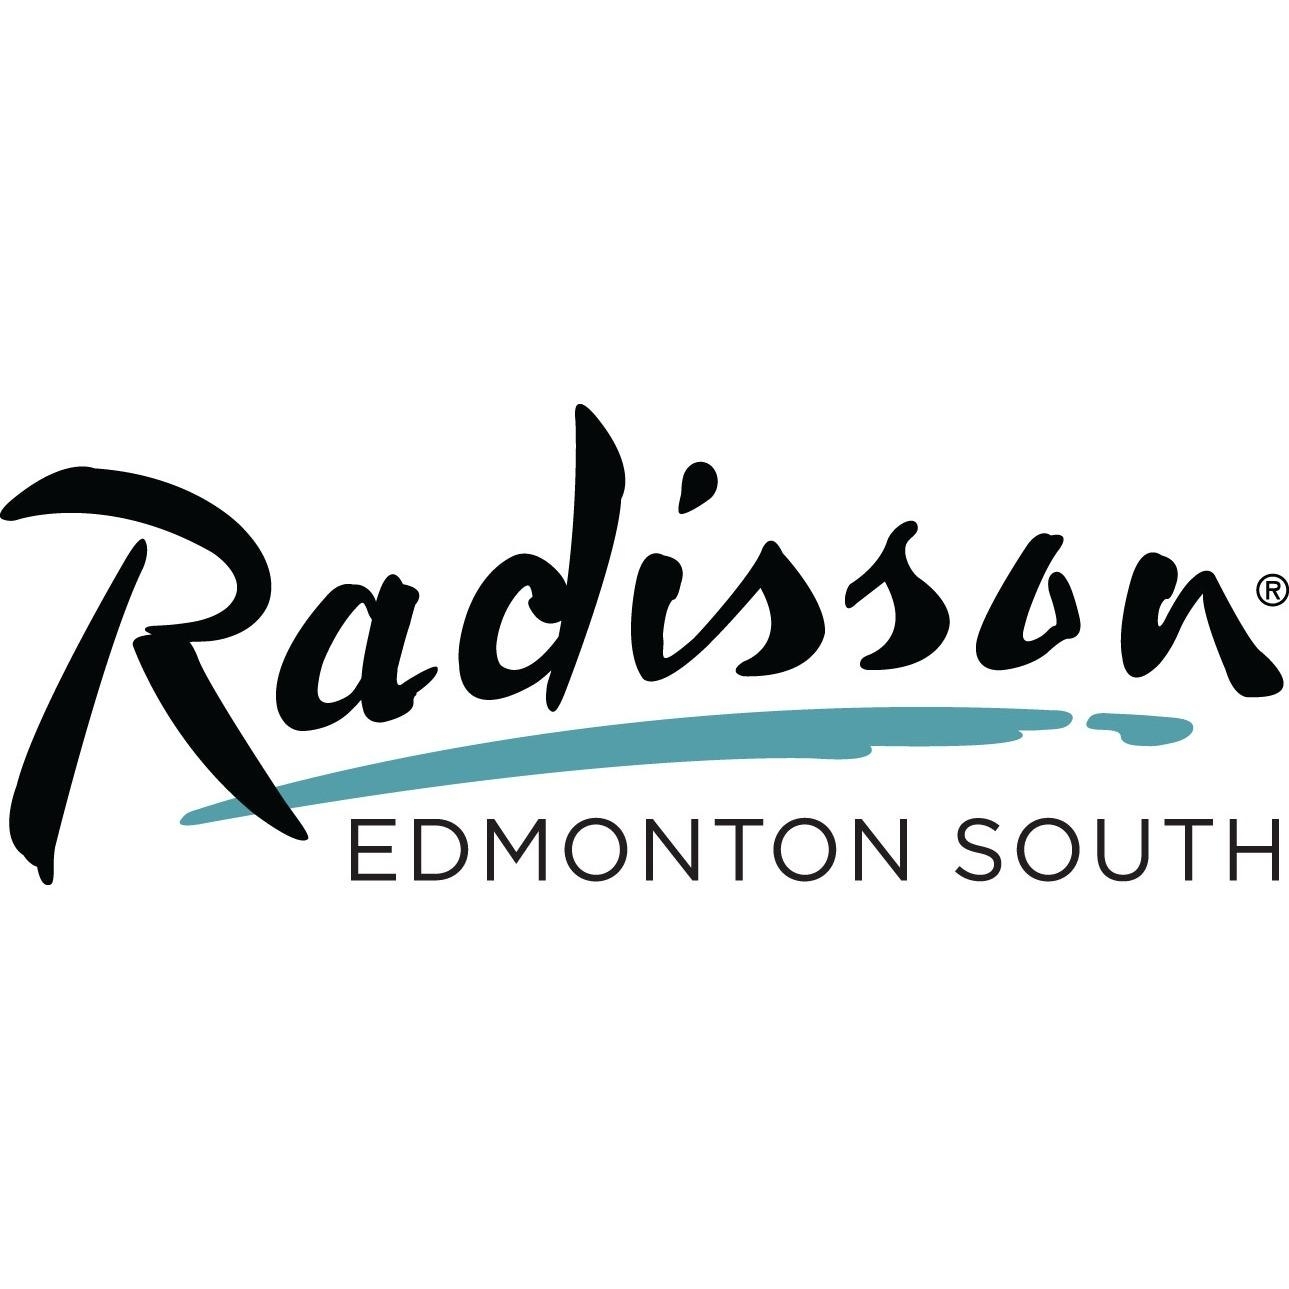 Radisson Hotel Edmonton South - Salles de réception et auditoriums